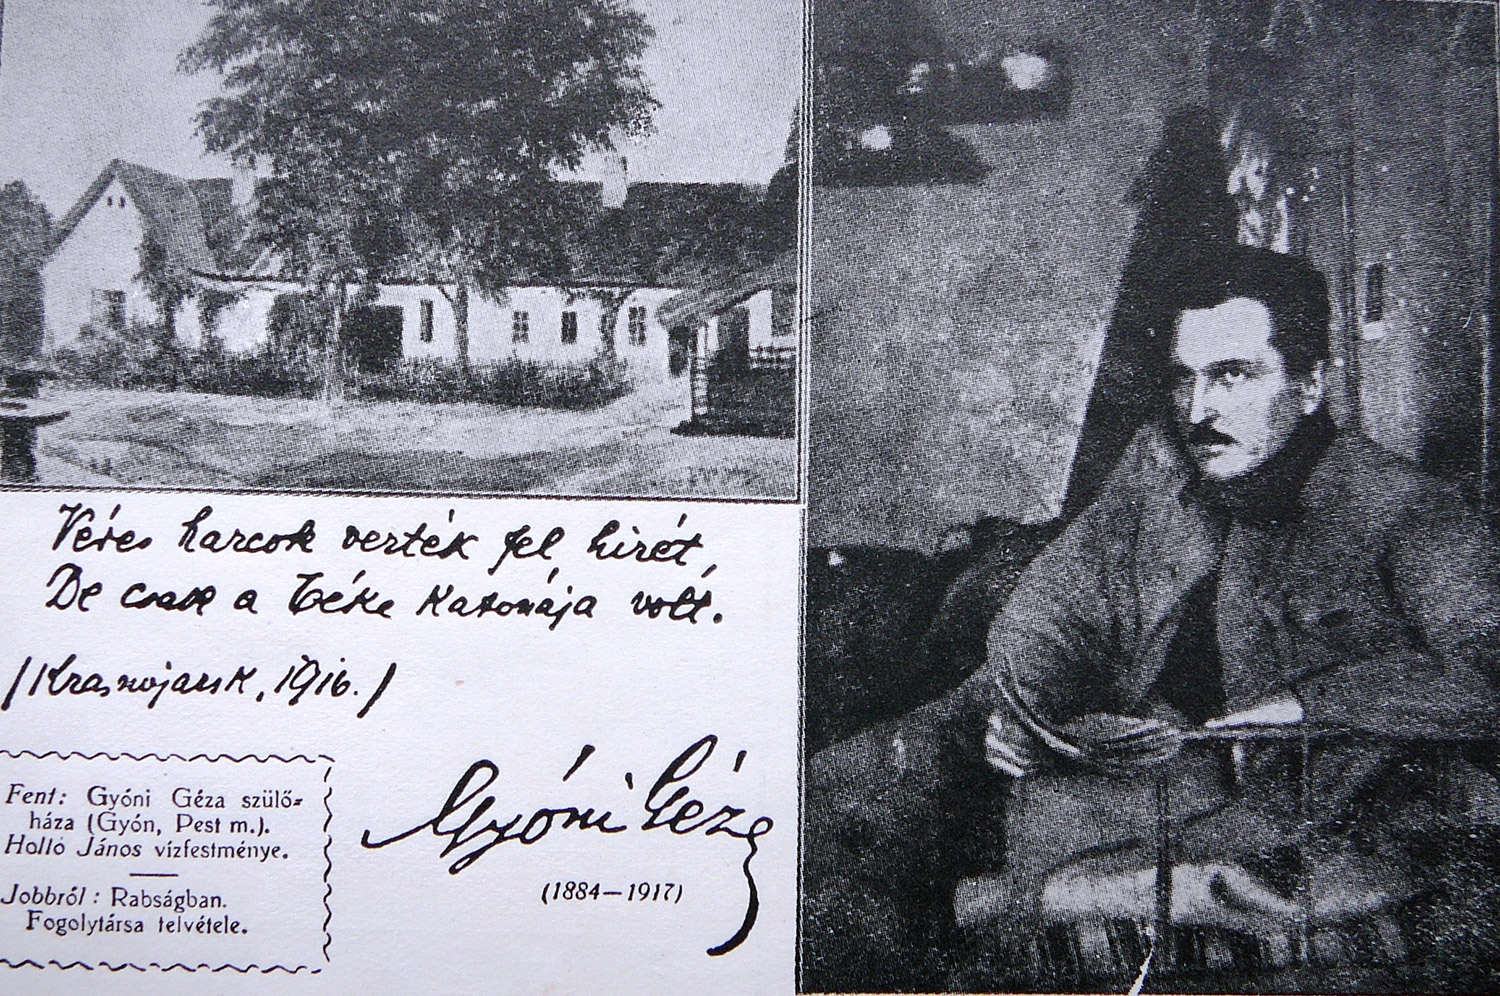 Holló János vízfestménye Gyóni Géza szülőházáról a képeslapon